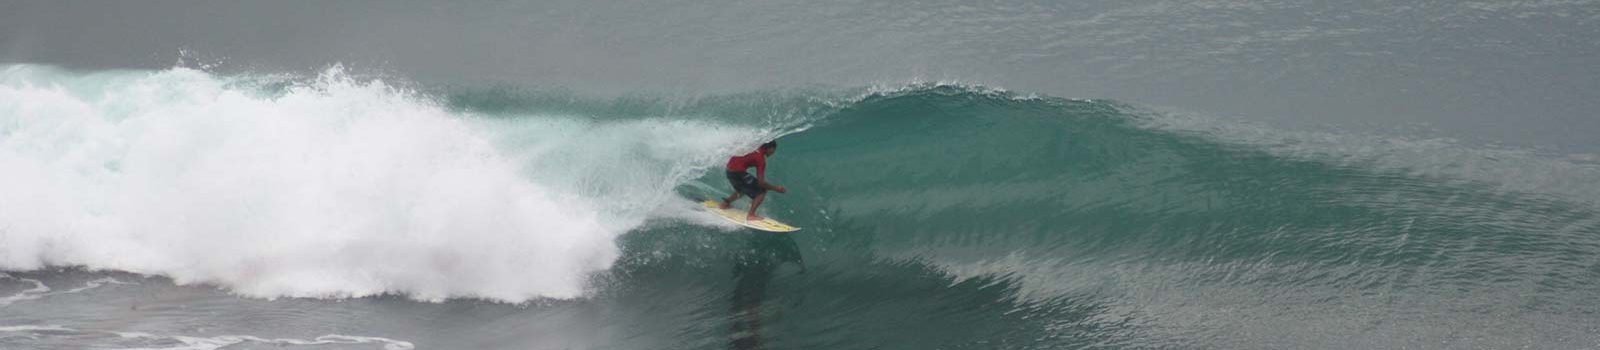 bali-surf-breaks